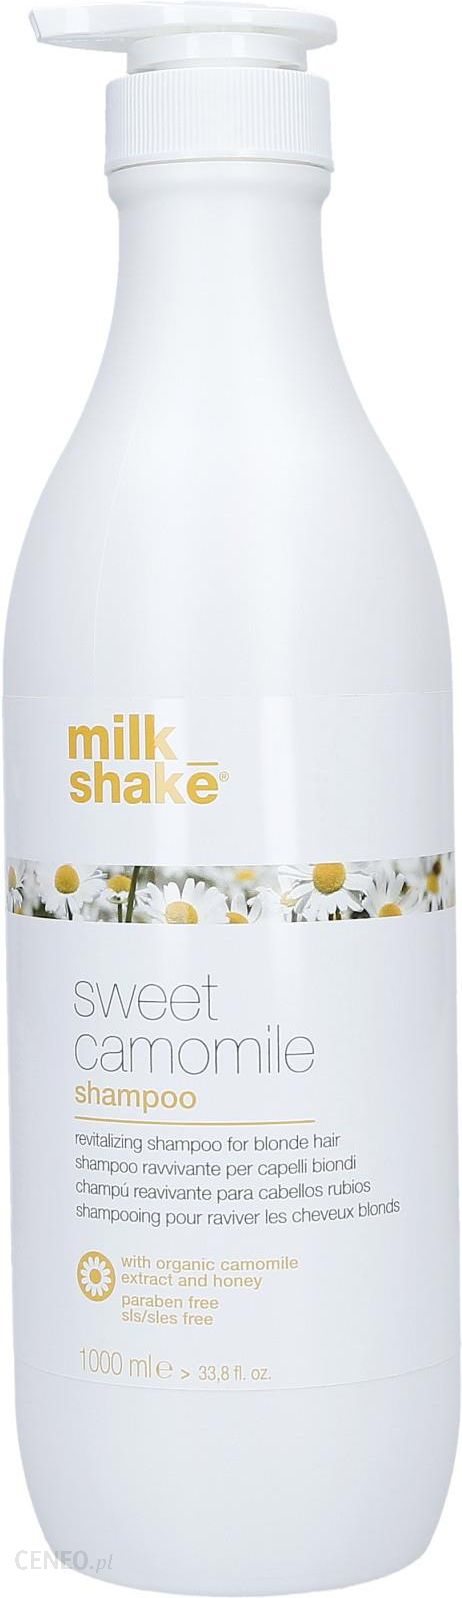 milk shake sweet camomile szampon rumiankowy do włosów blond opinie